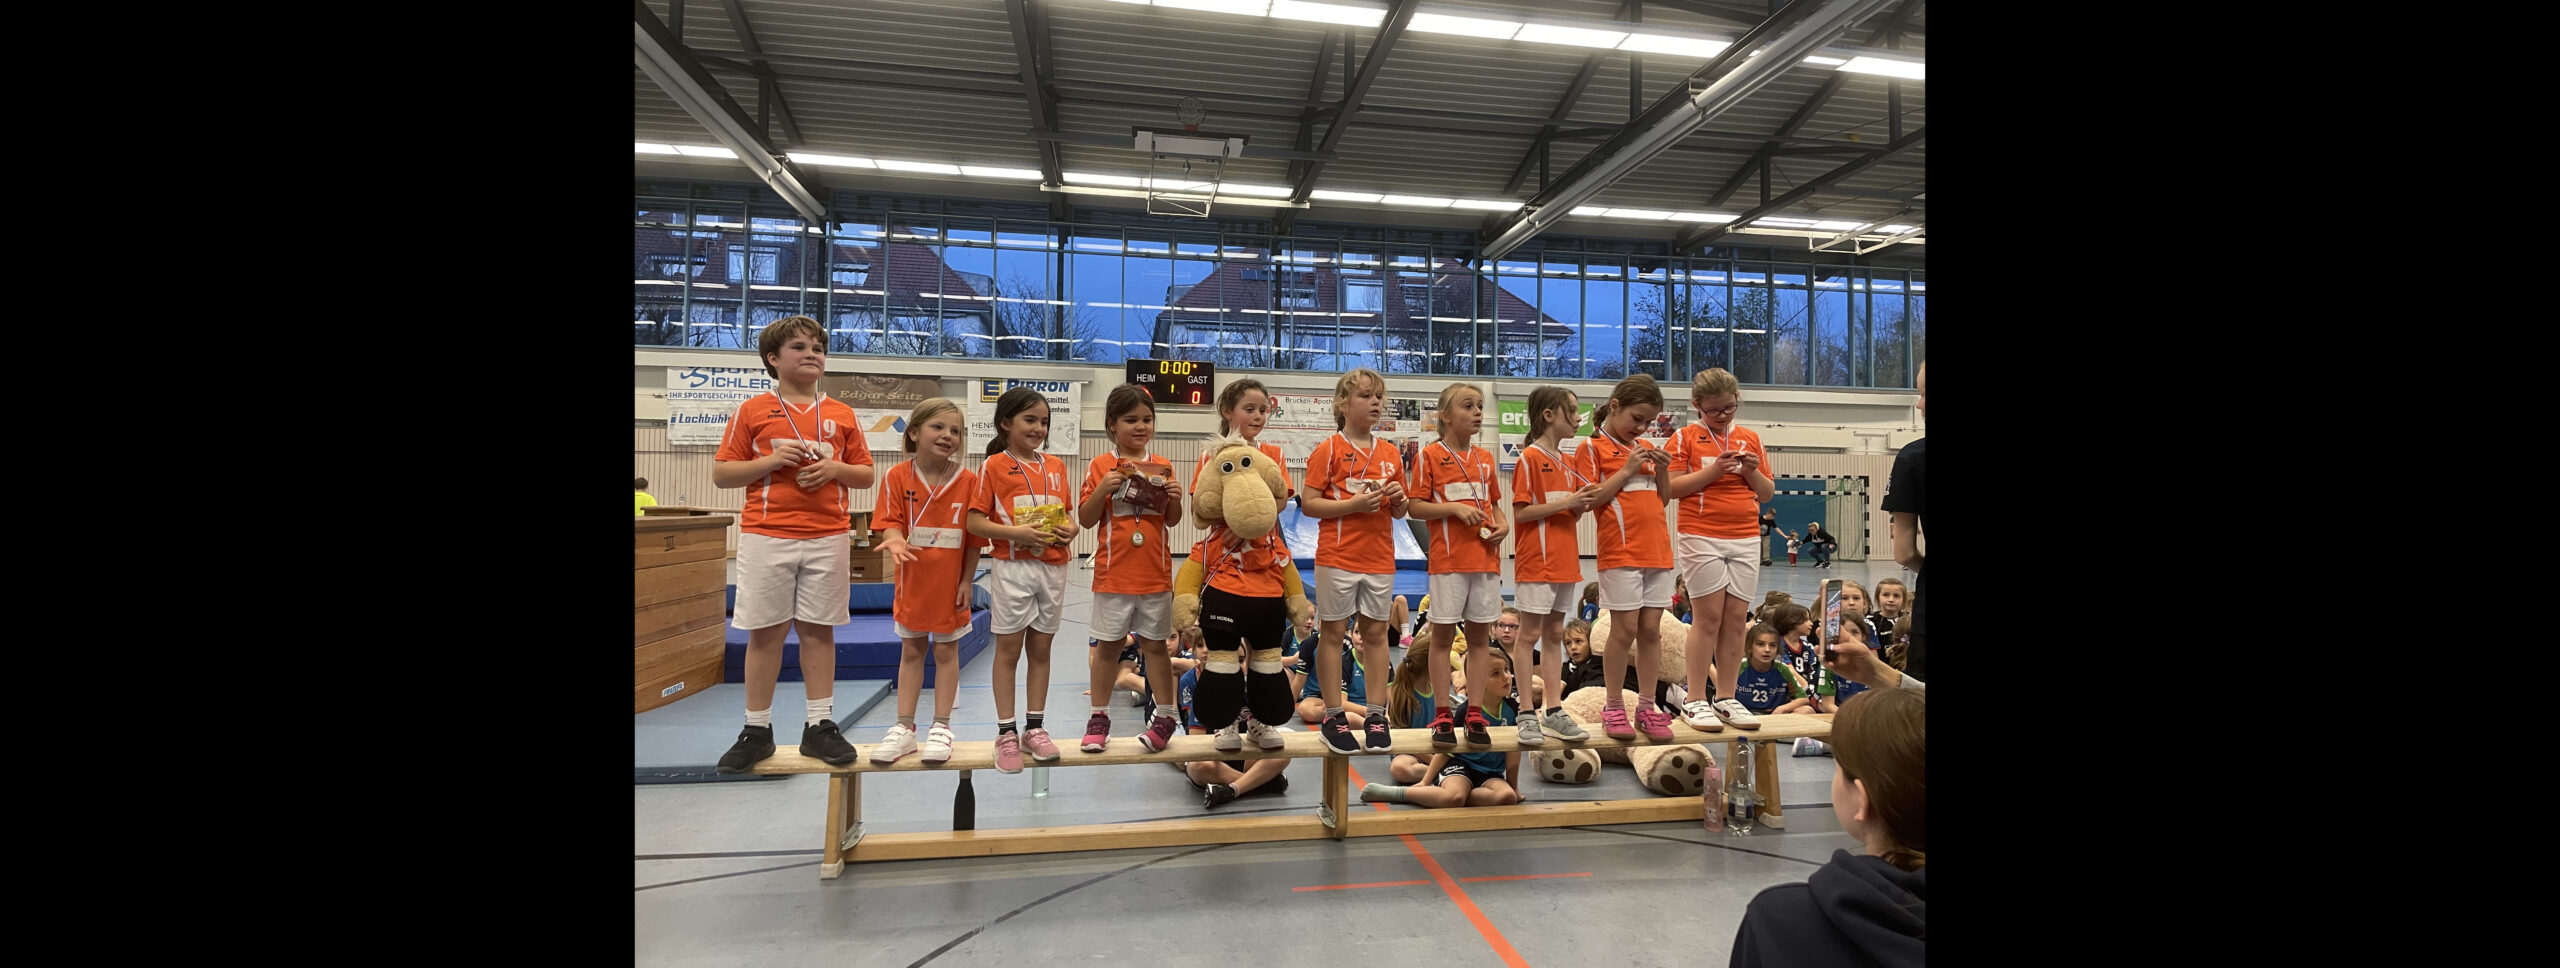 Handball – eine Sportart, die Kinder und Jugendliche begeistert